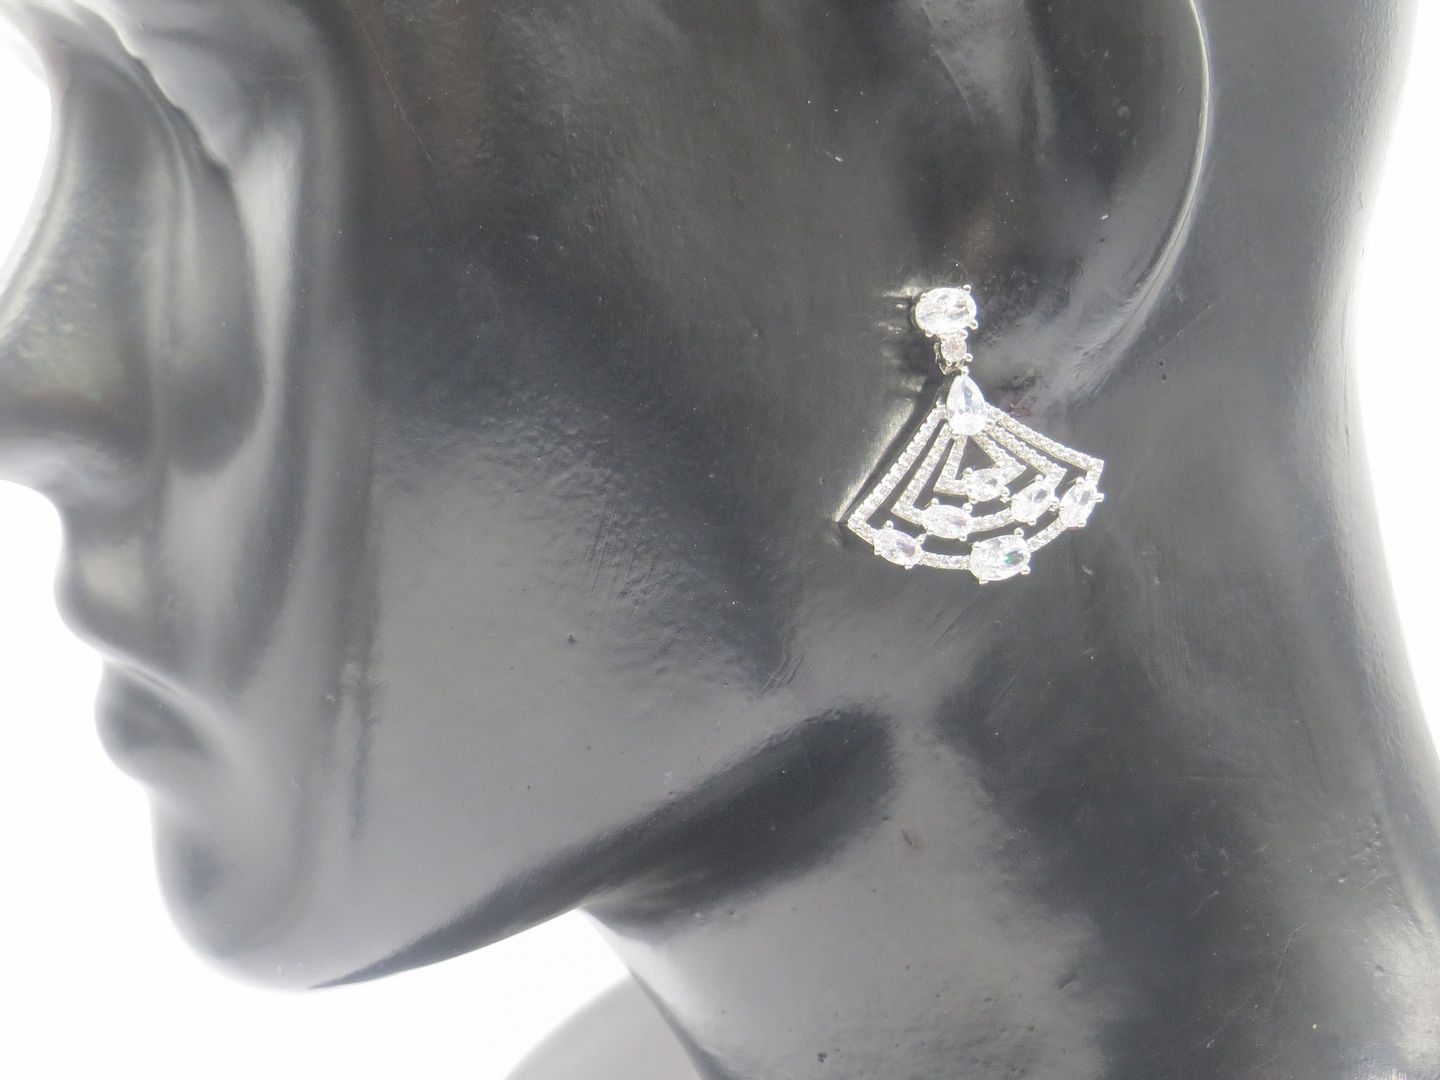 Jewelshingar Jewellery American Diamond PlatedSilver Colour Stud Earrings For Women ( 54918EAD )